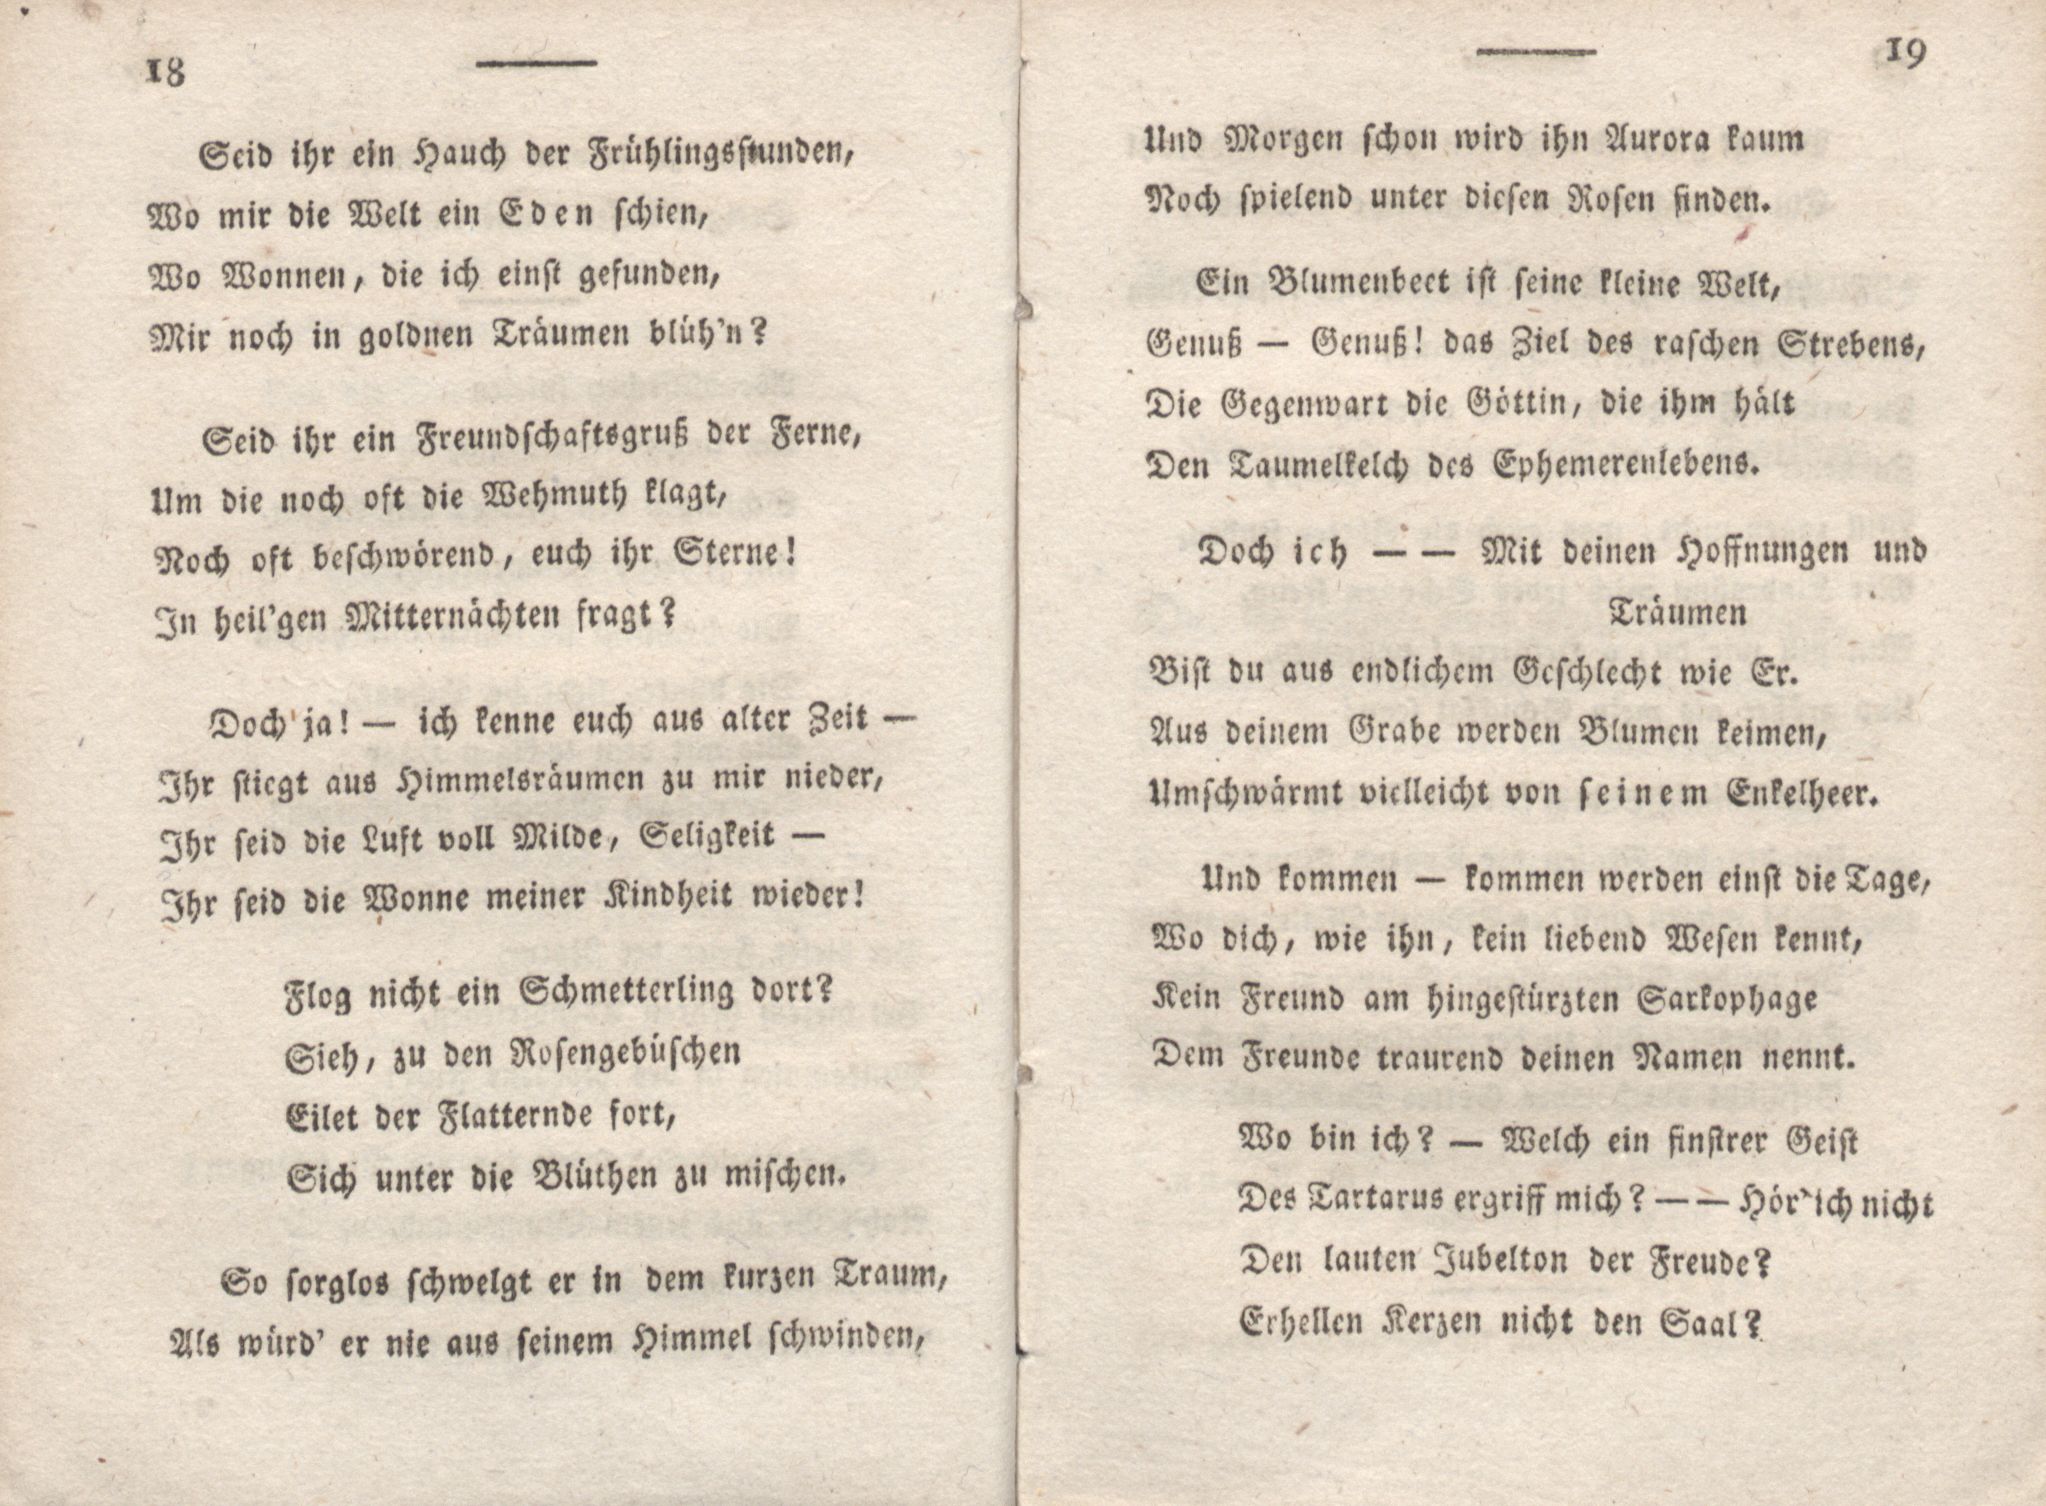 Livona [2] (1815) | 19. (18-19) Main body of text